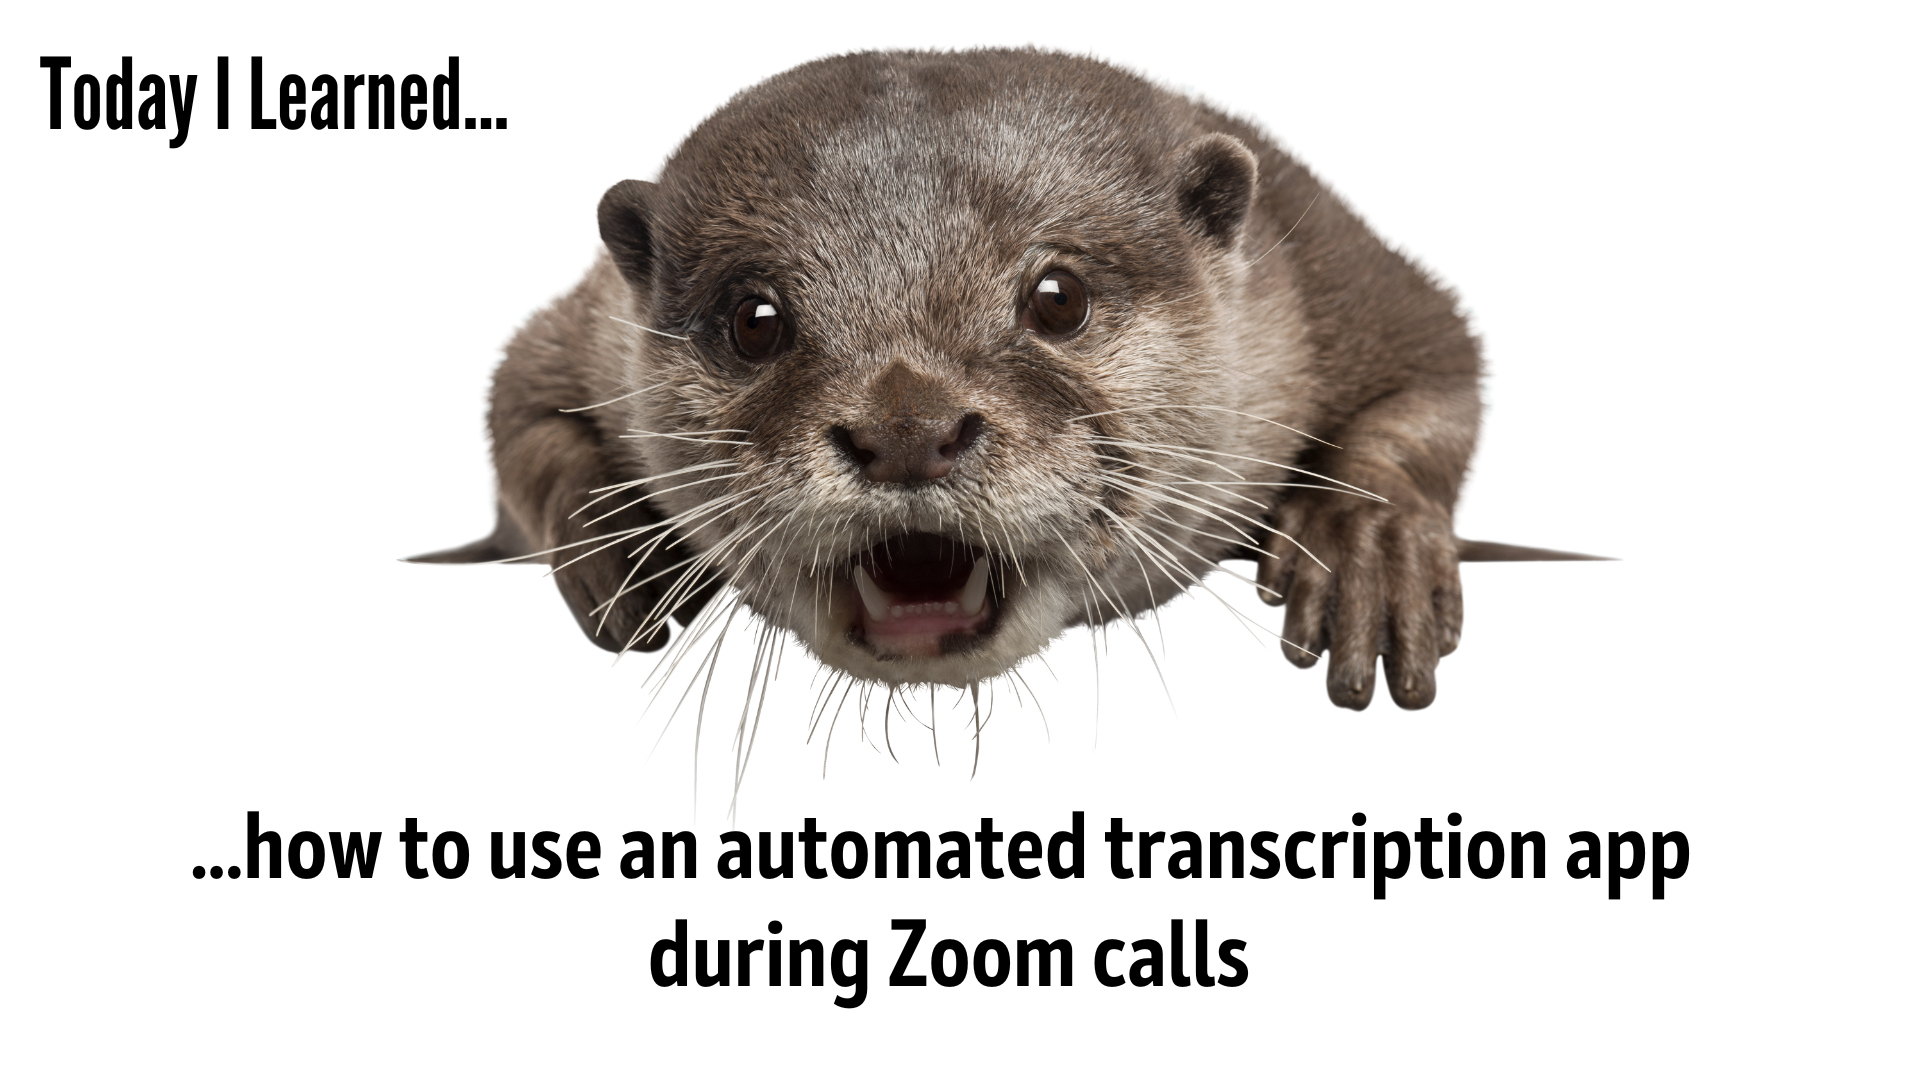 otter ai transcription adjust time stamp